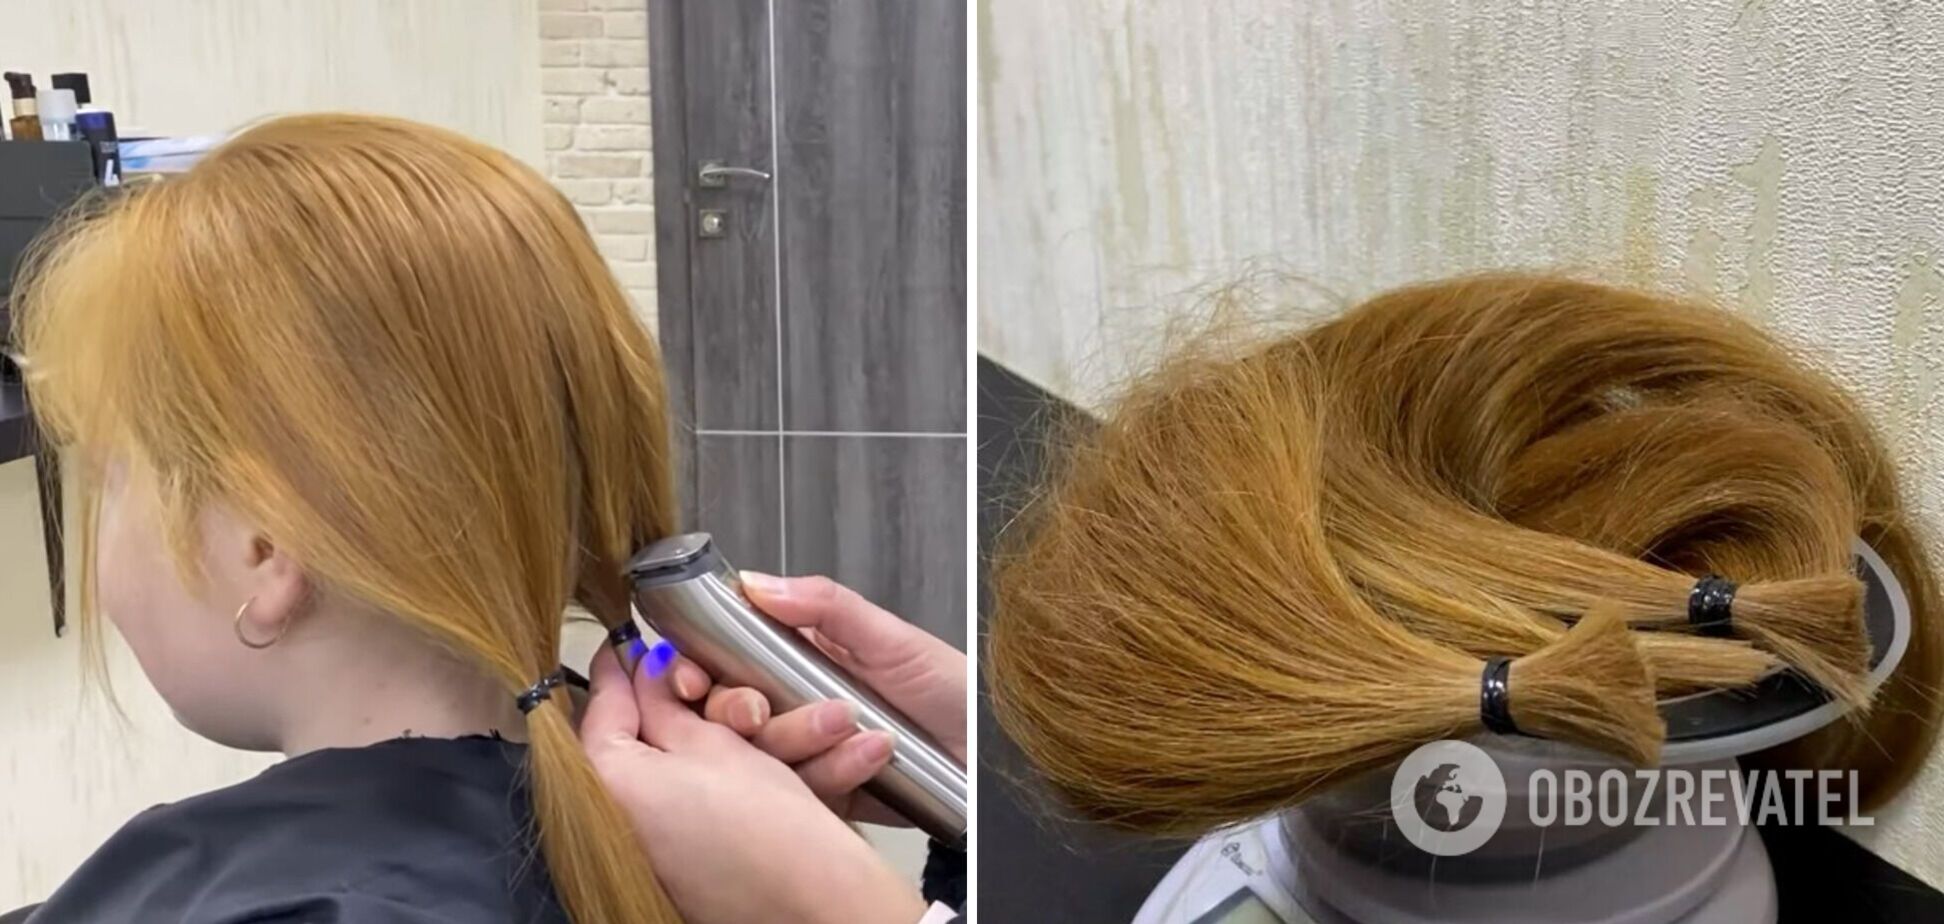 9-річна дівчинка відрізала та продала пів метра волосся, щоб допомогти військовим під Бахмутом